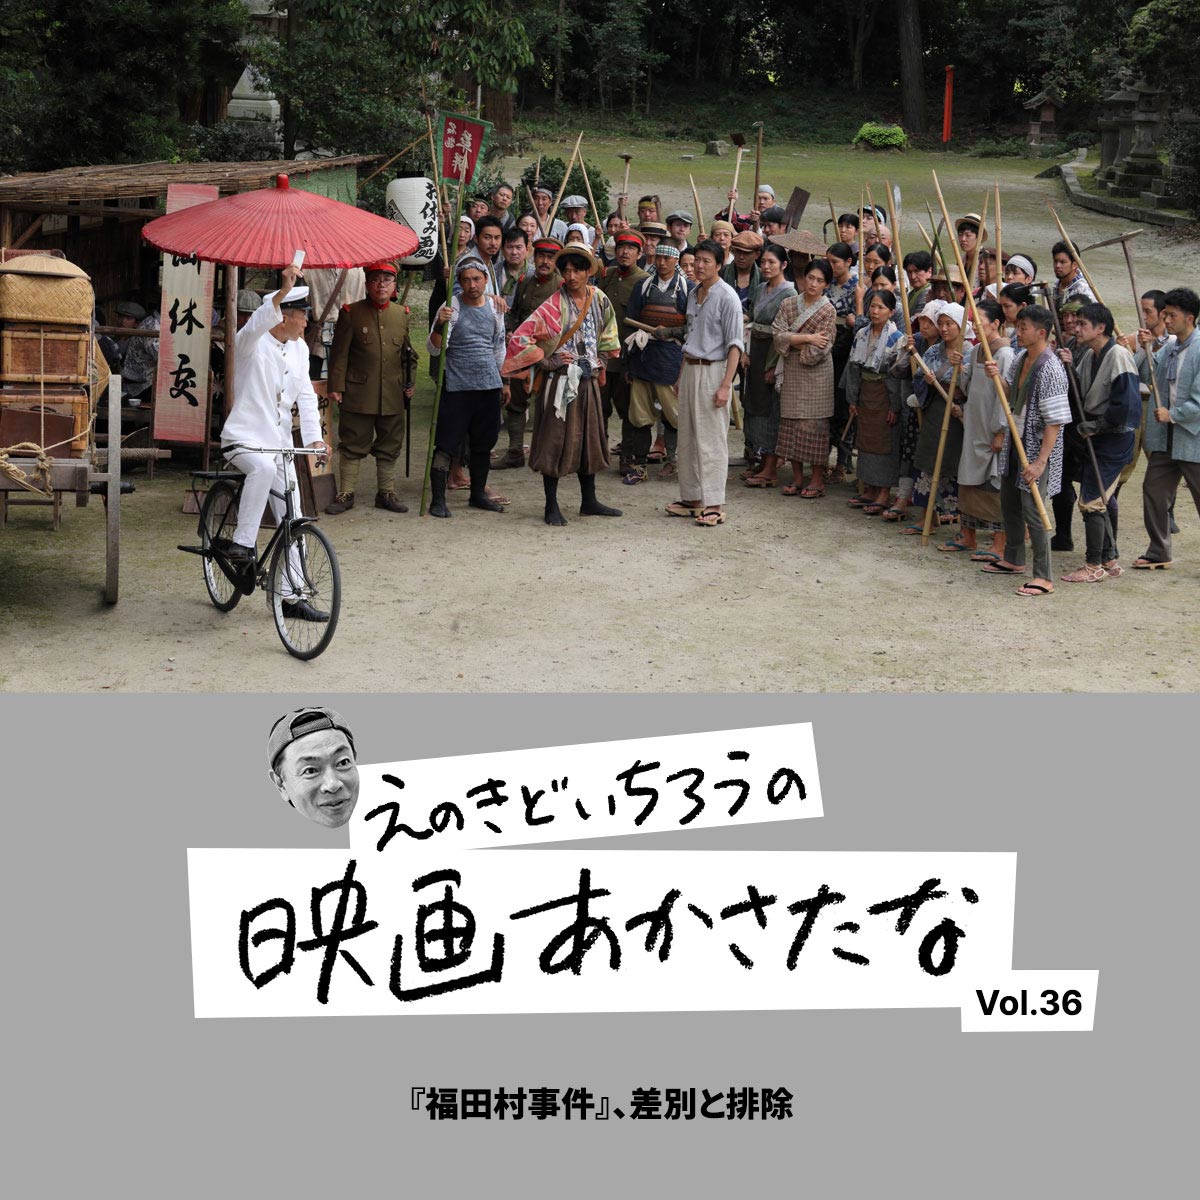 『福田村事件』、差別と排除【えのきどいちろうの映画あかさたな Vol.36】